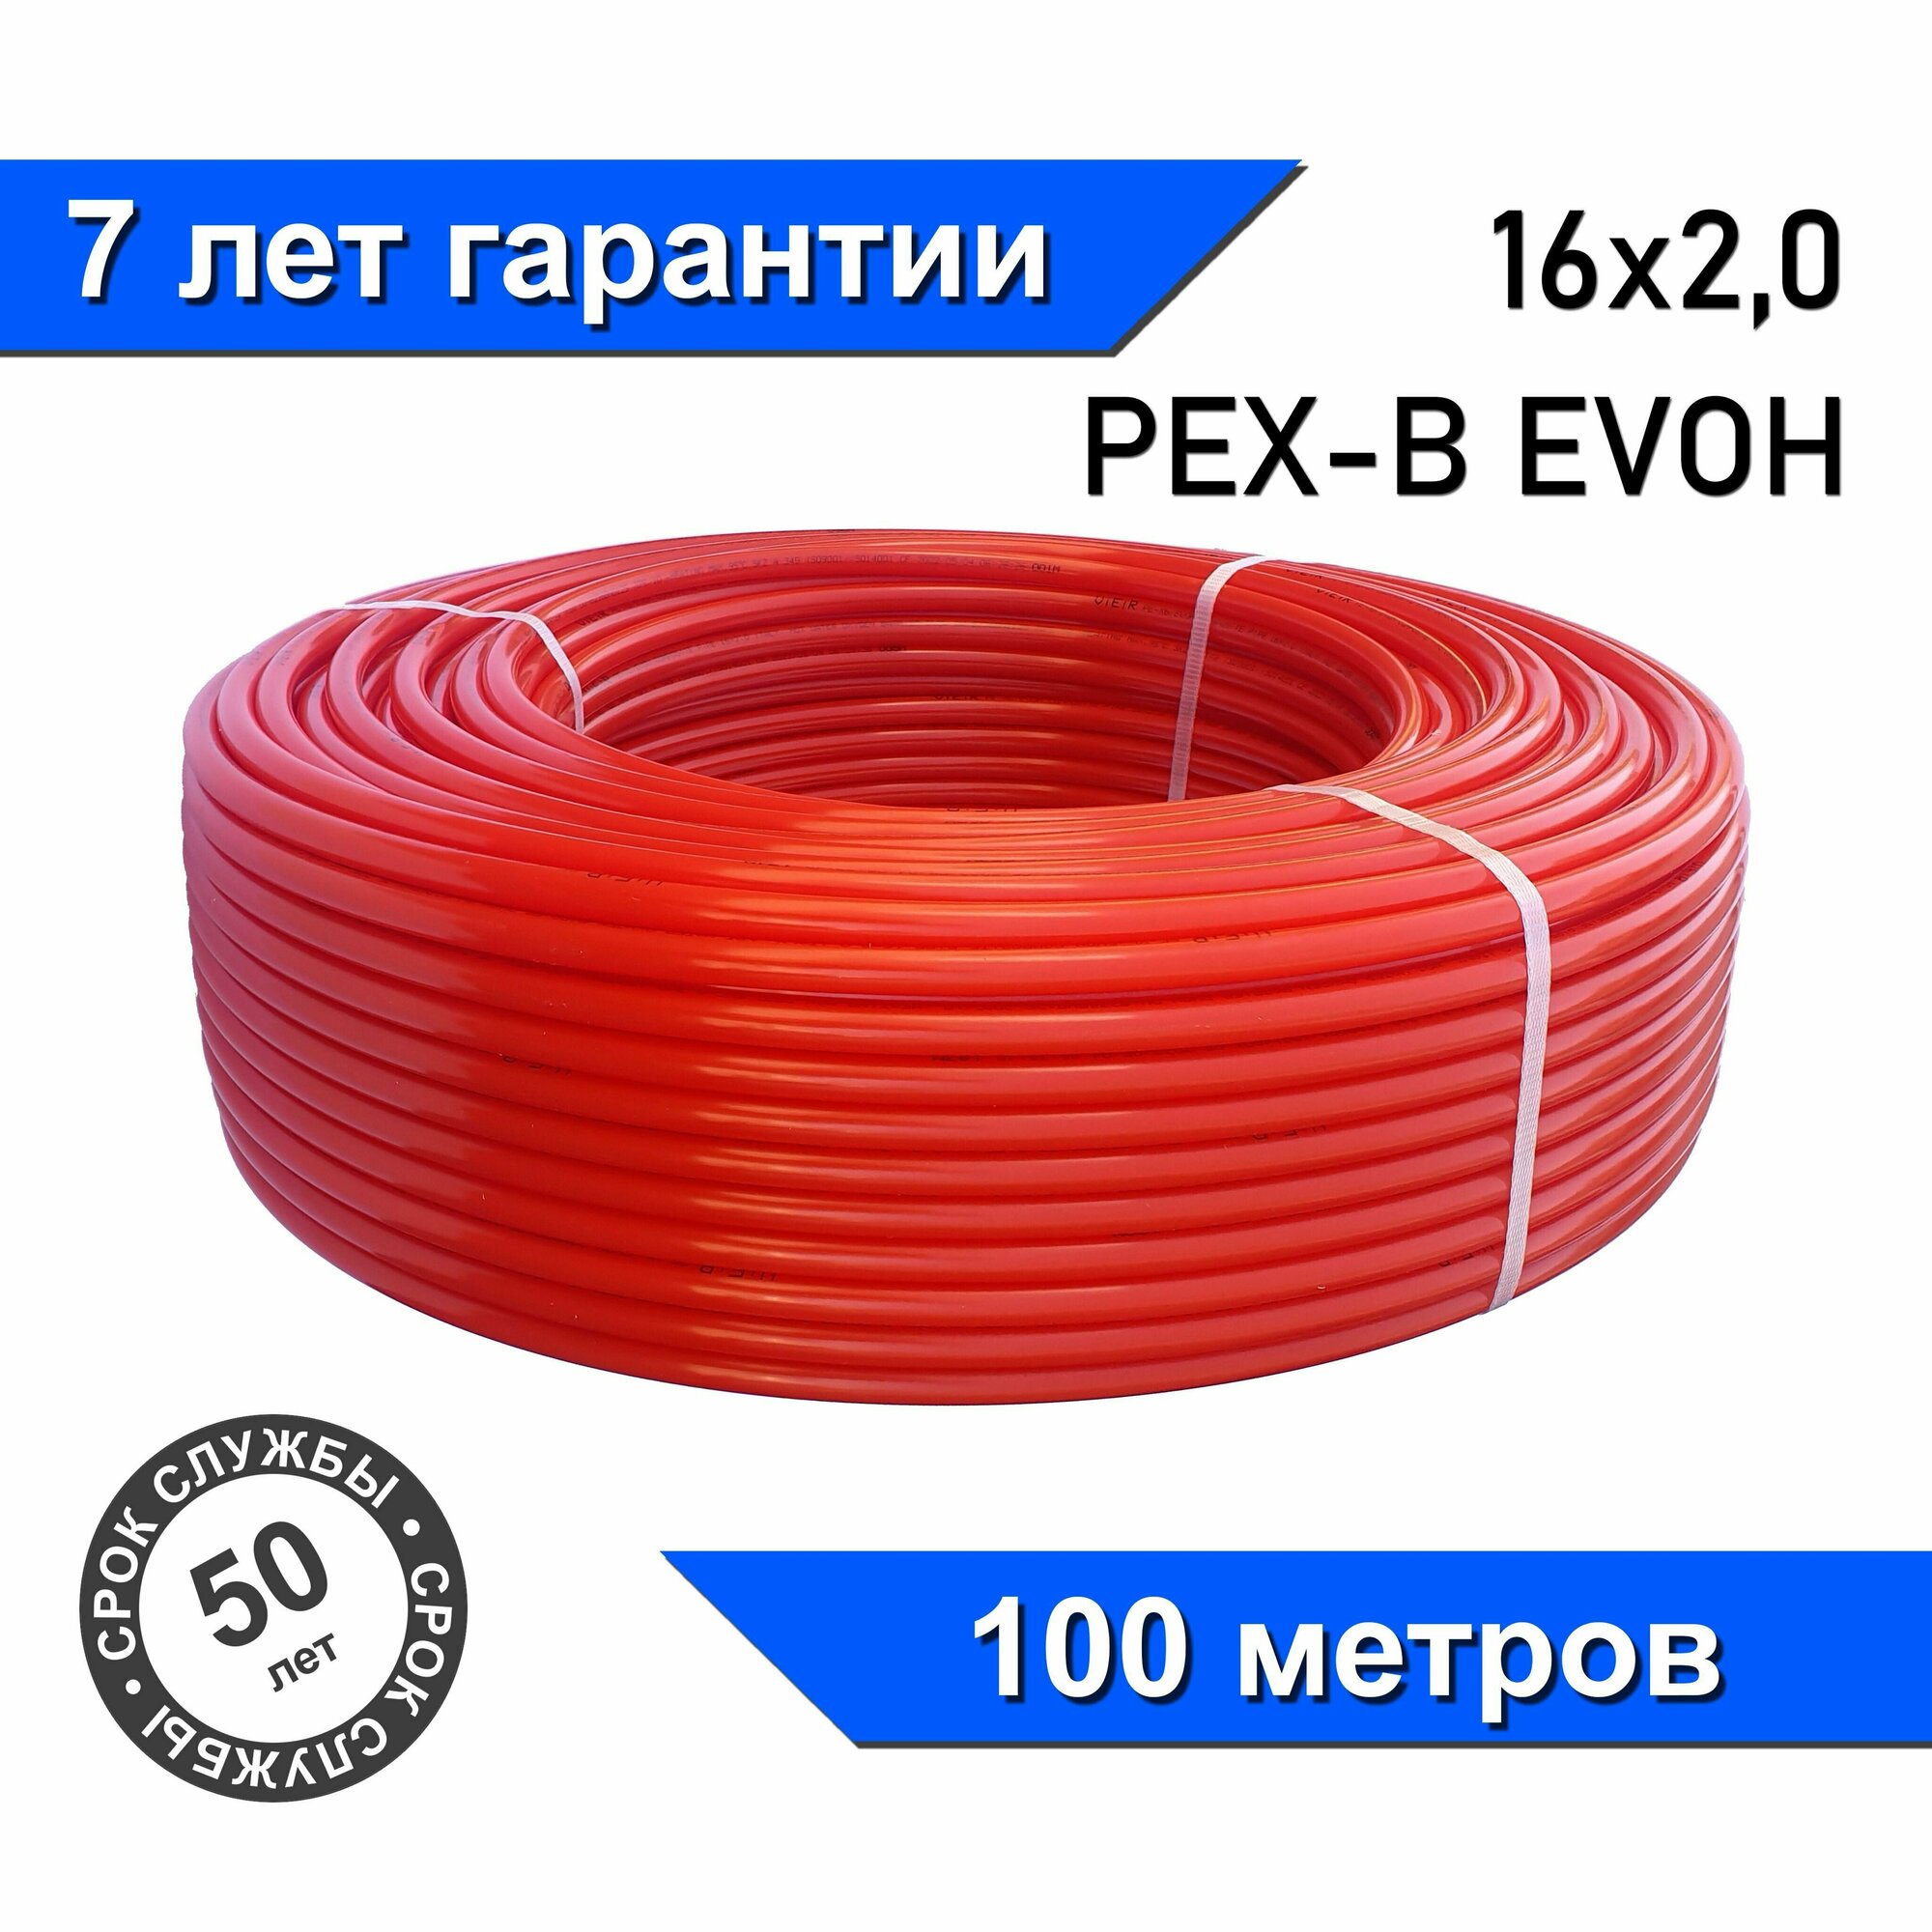 Труба для теплого пола из сшитого полиэтилена с кислородозащитным слоем 100м VIEIR Pex-EVOH 16x2,0 (красная)